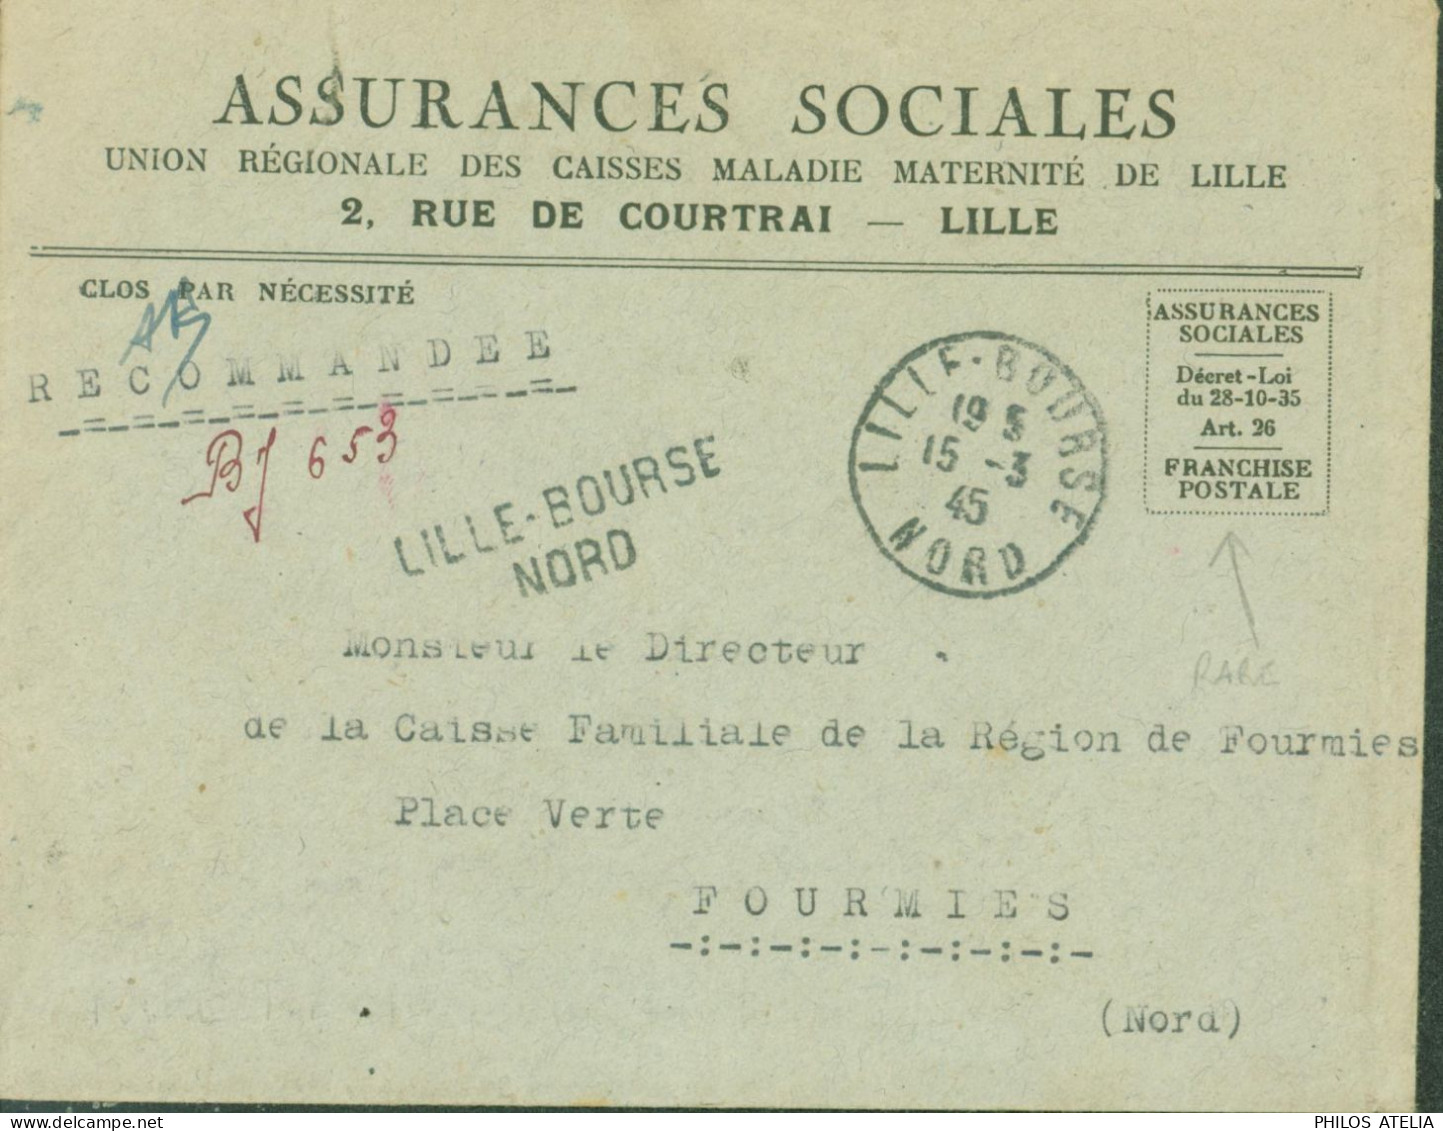 Guerre 40 Recommandé De Fortune BJ 653 Lille Bourse Nord Avec Franchise Postale Assurances Sociales CAD 15 3 45 - Guerre De 1939-45